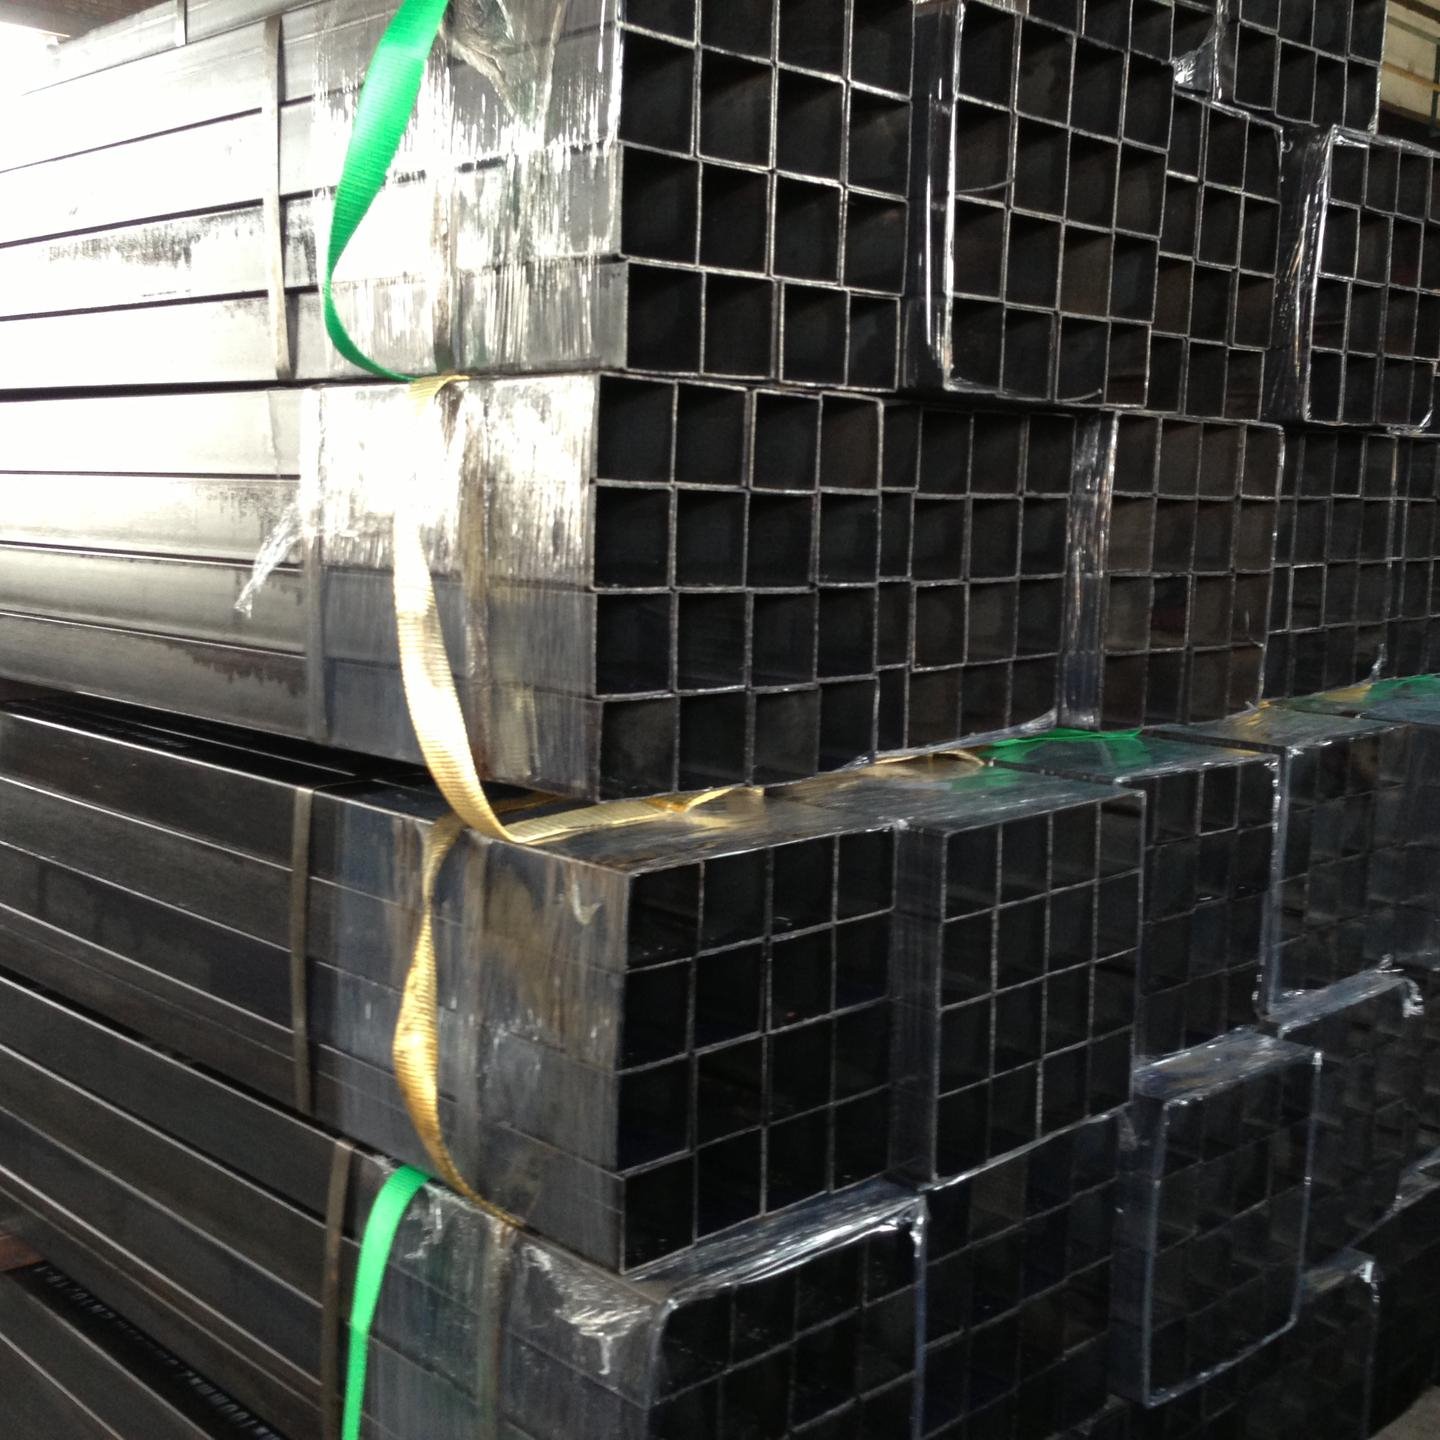 天津腾越钢铁有限公司主营销售 黑方管 焊接方管 涂油方管 80*80 Q235材质  可根据产品标准及客户需求定做